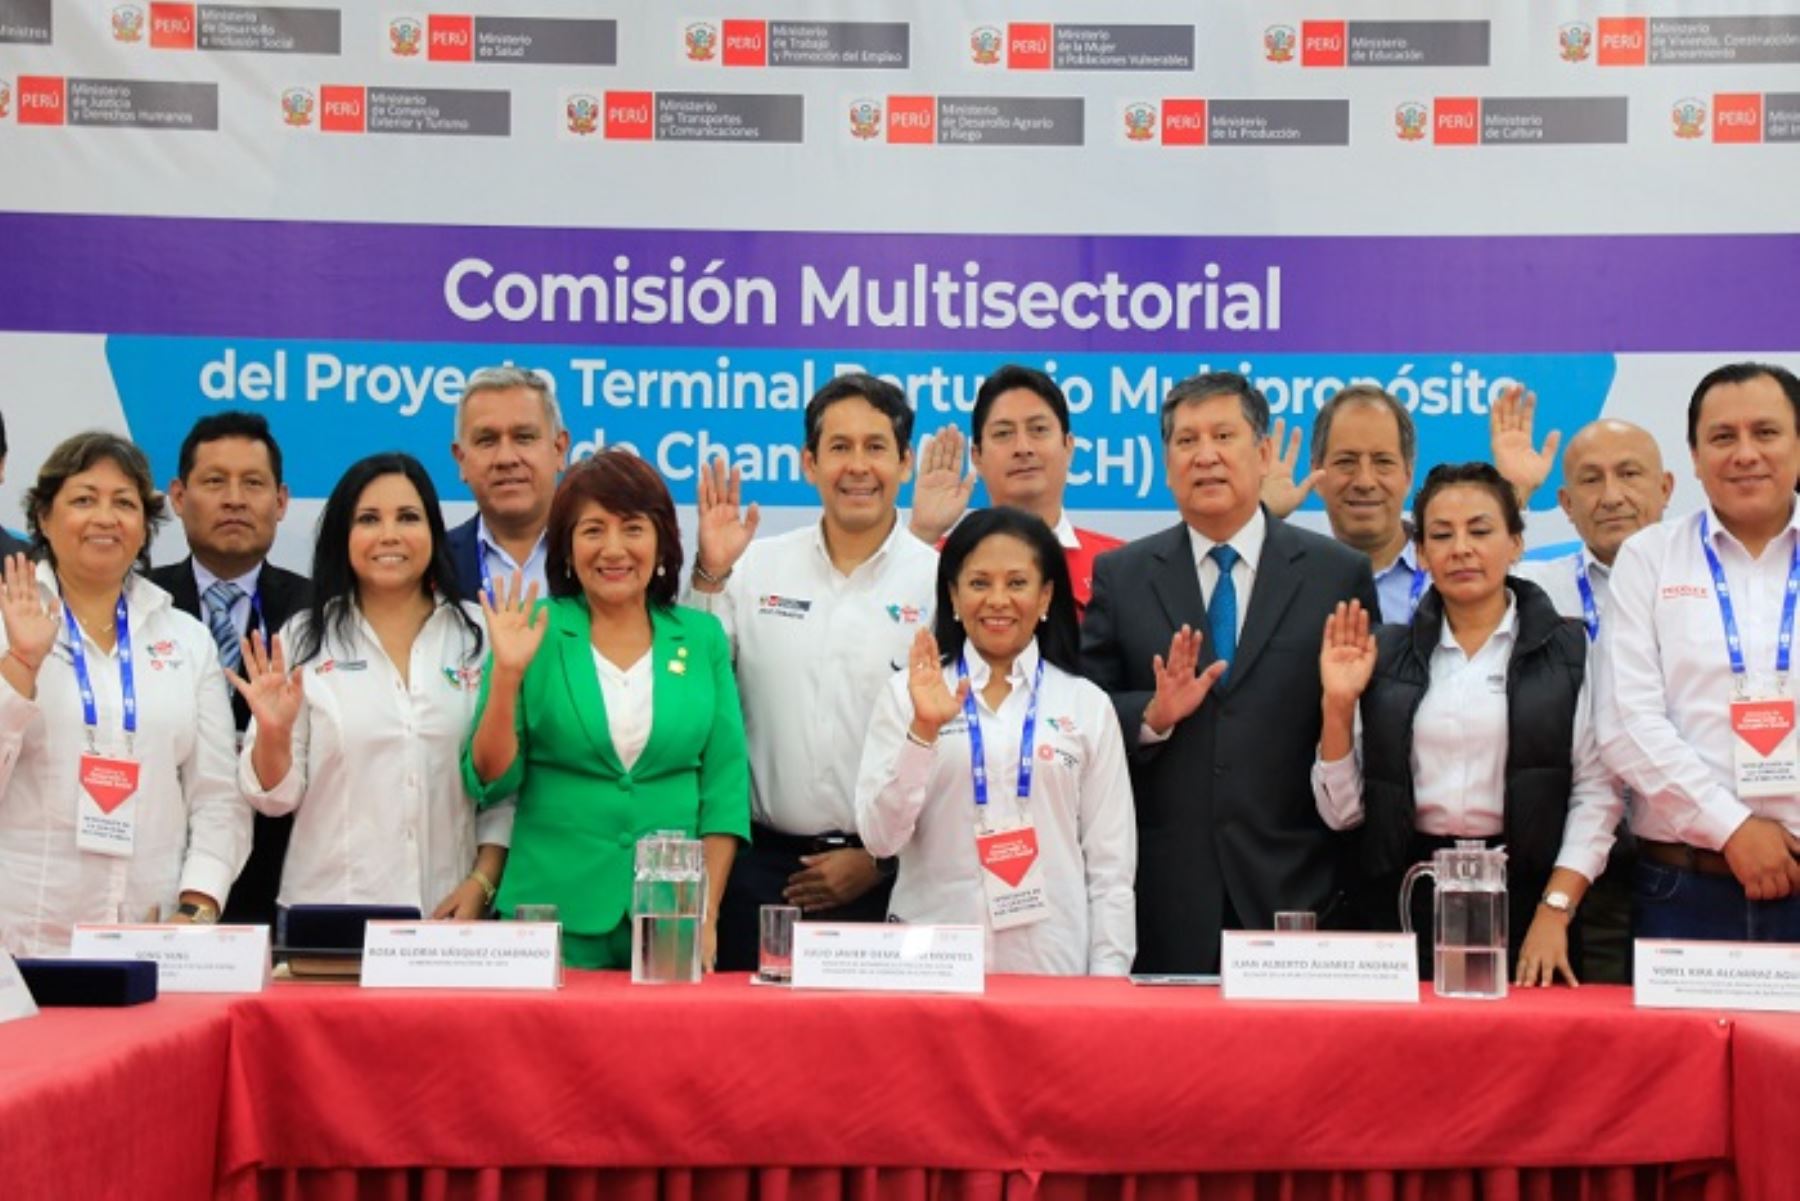 La titular de la Mujer asistió a la instalación de la comisión multisectorial para el desarrollo del megapuerto de Chancay.